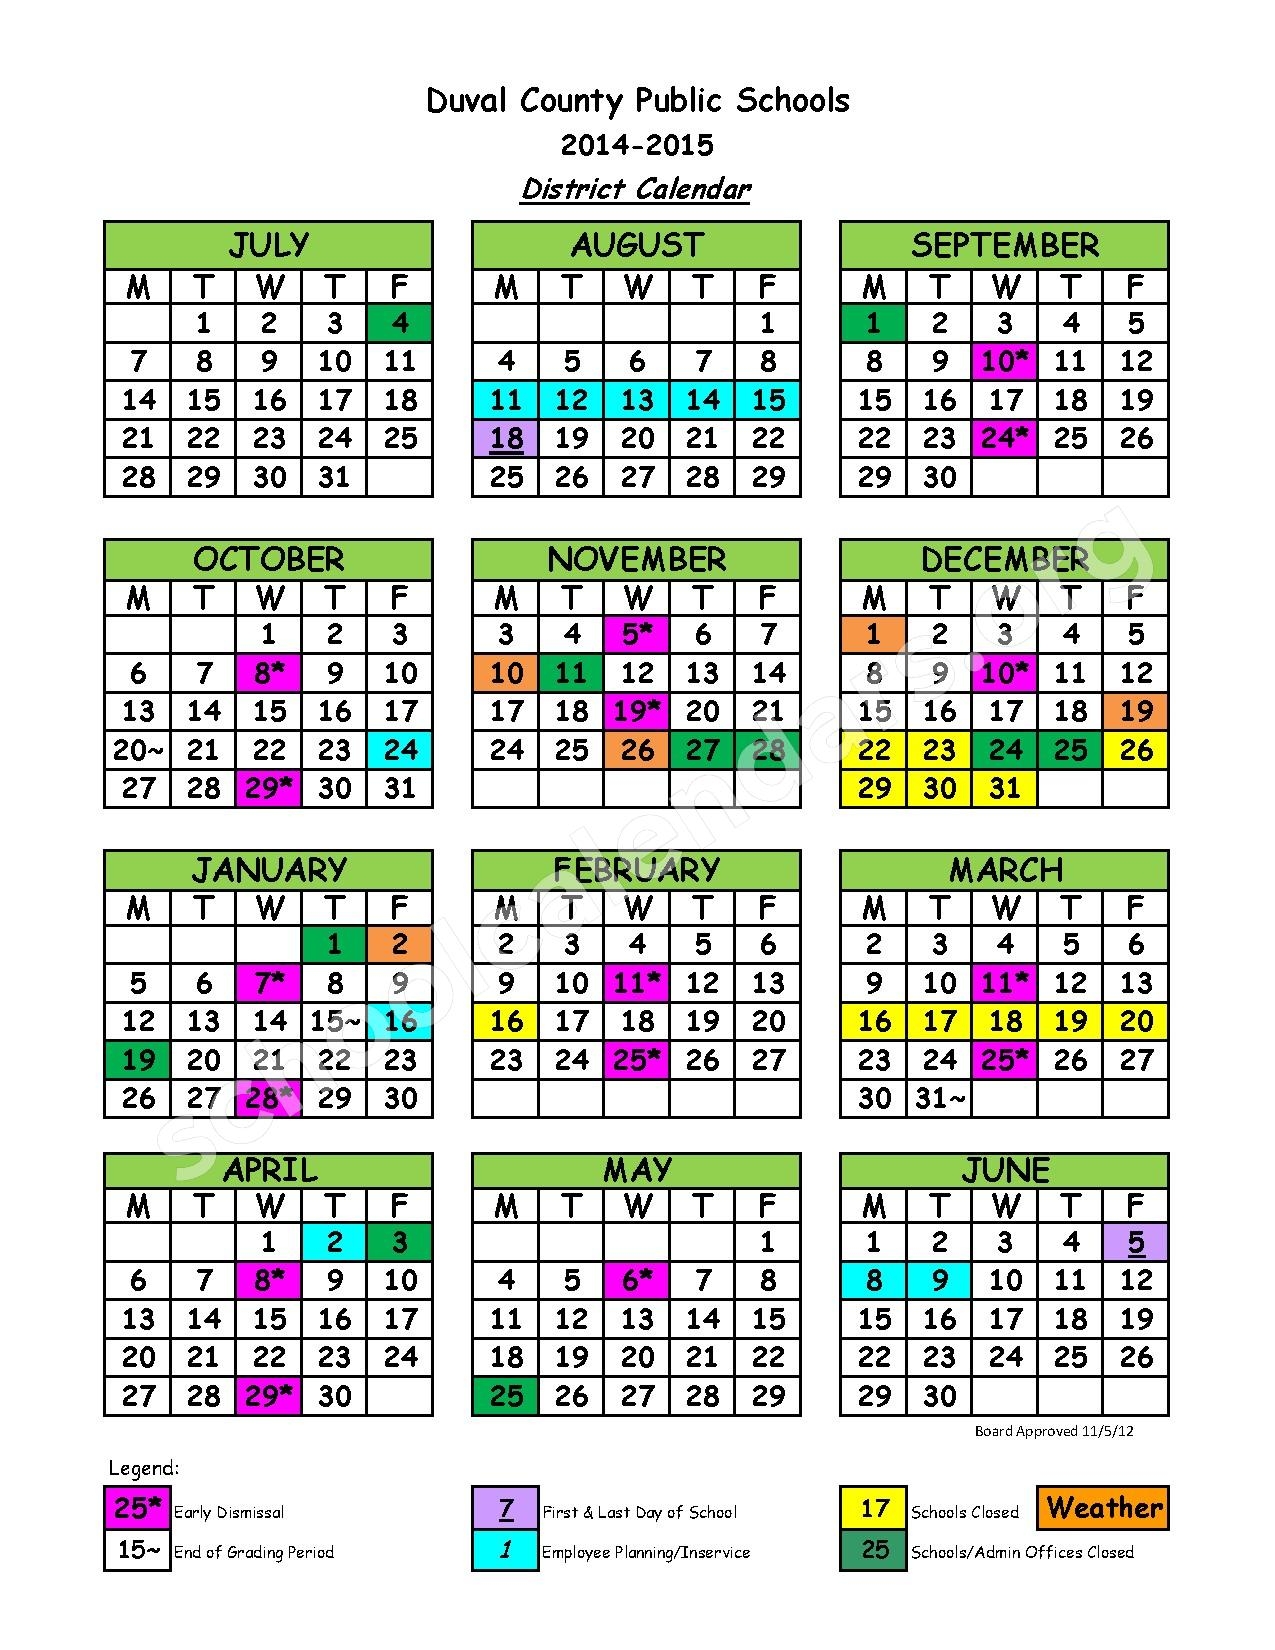 duval-school-calendar-qualads